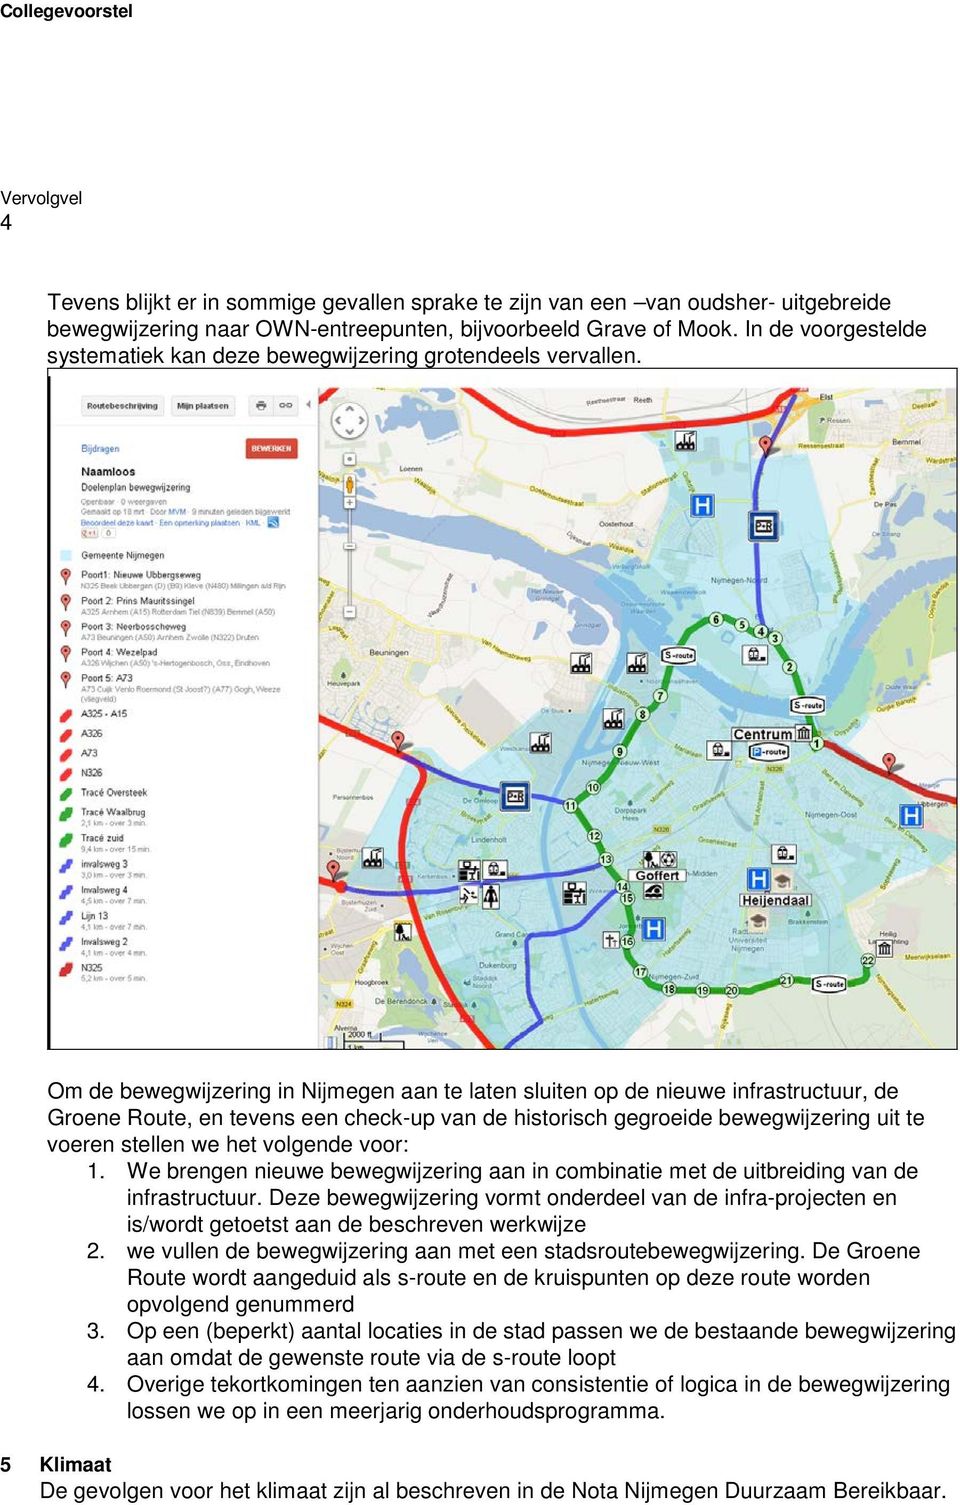 Om de bewegwijzering in Nijmegen aan te laten sluiten op de nieuwe infrastructuur, de Groene Route, en tevens een check-up van de historisch gegroeide bewegwijzering uit te voeren stellen we het